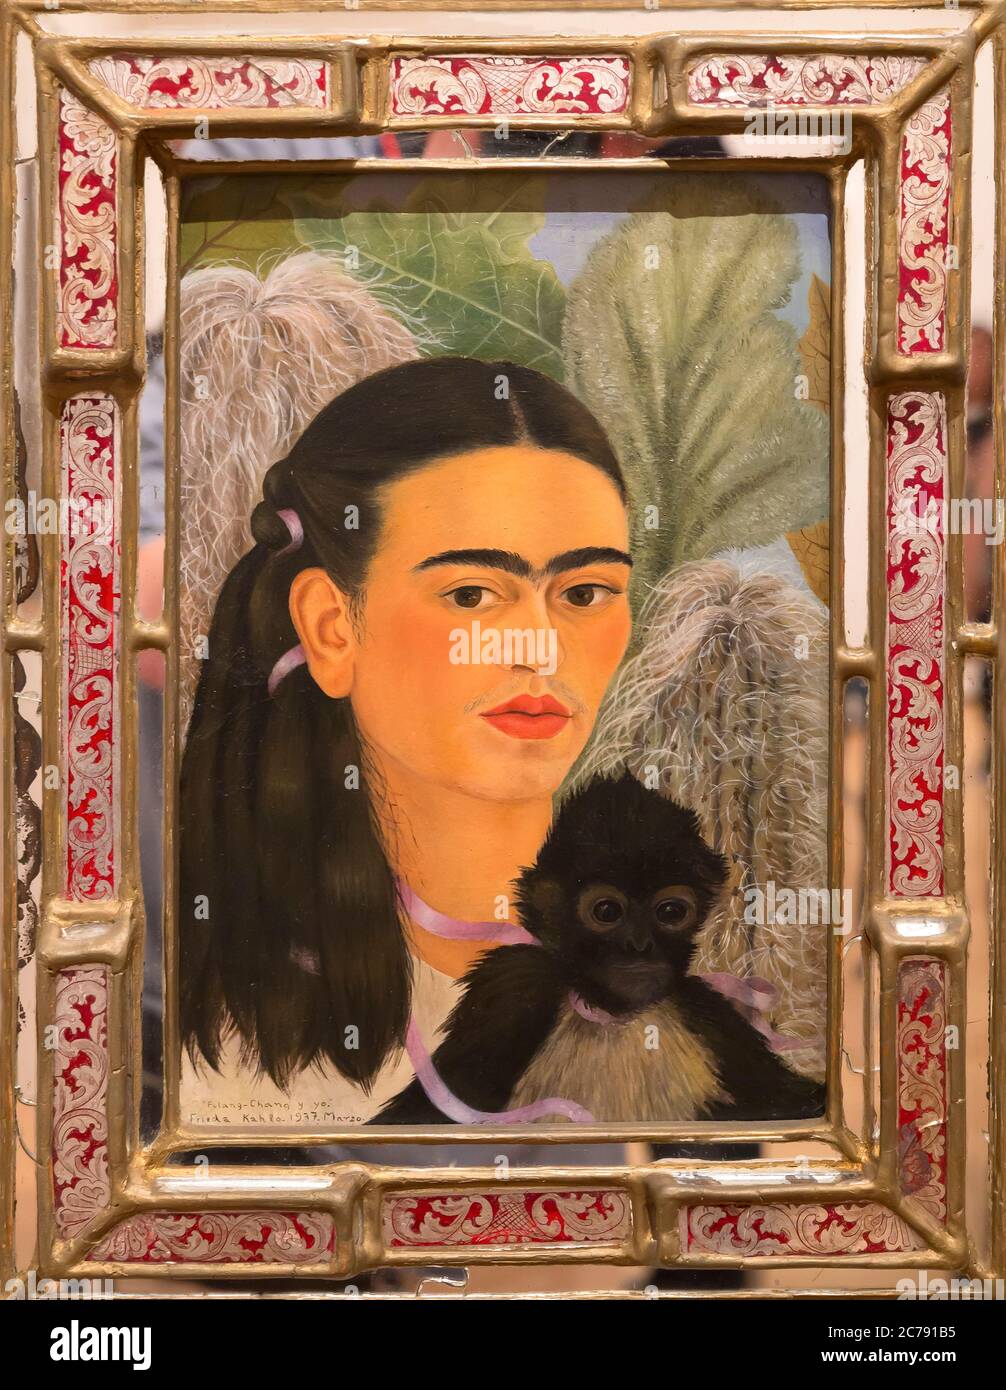 Fulang-Chang and I, Frida Kahlo, 1937, Stock Photo